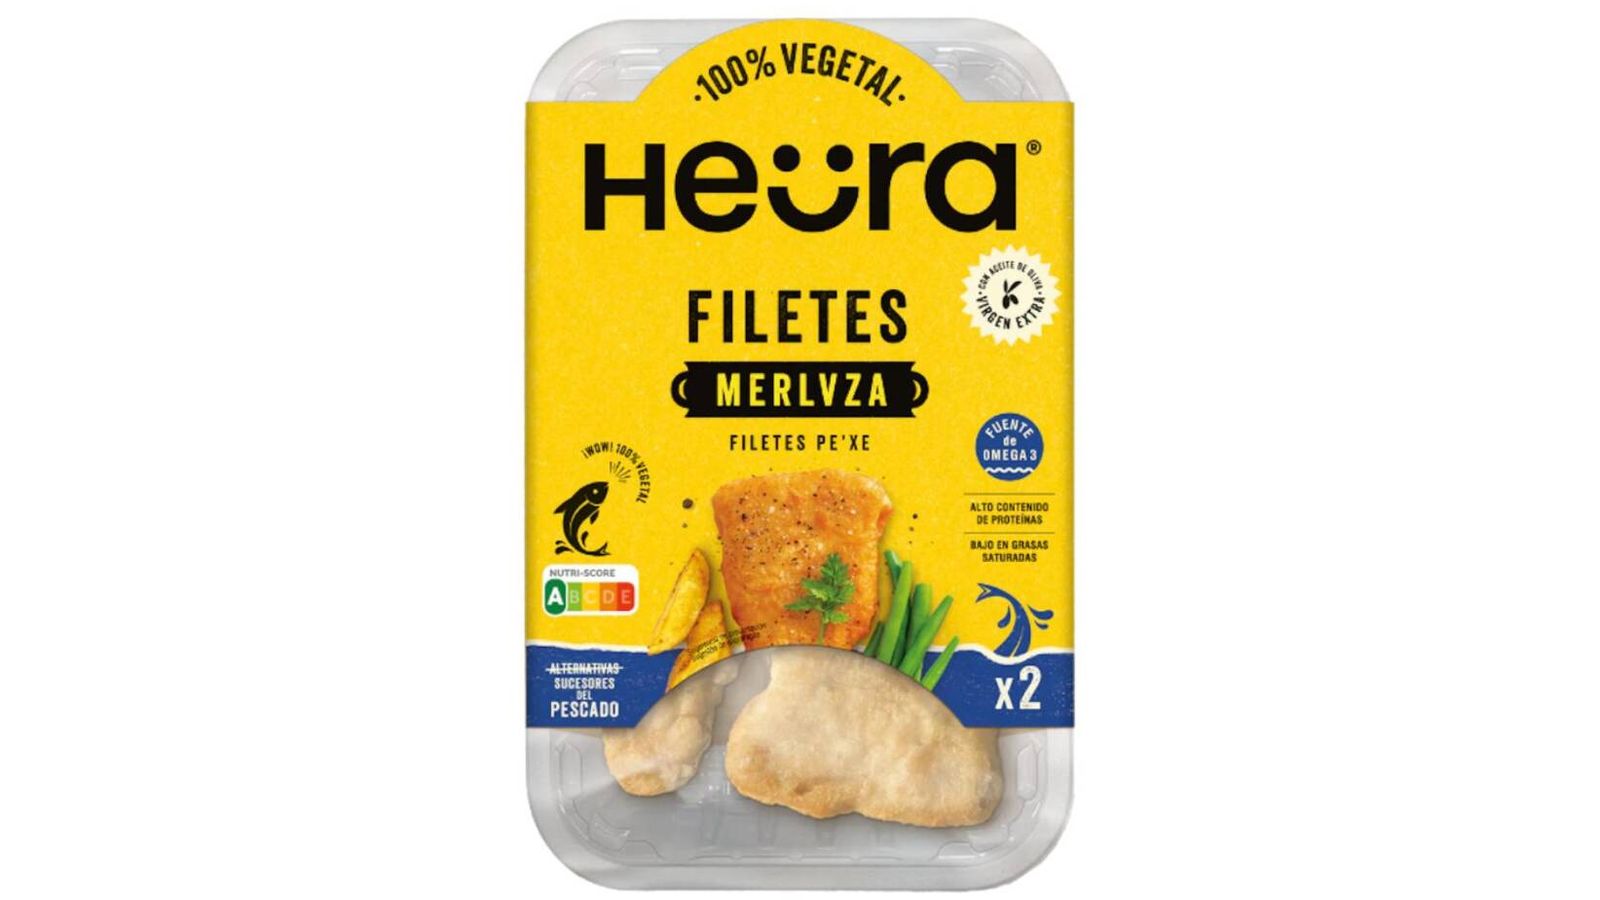 Los filetes de Merlvza sancionados de Heura